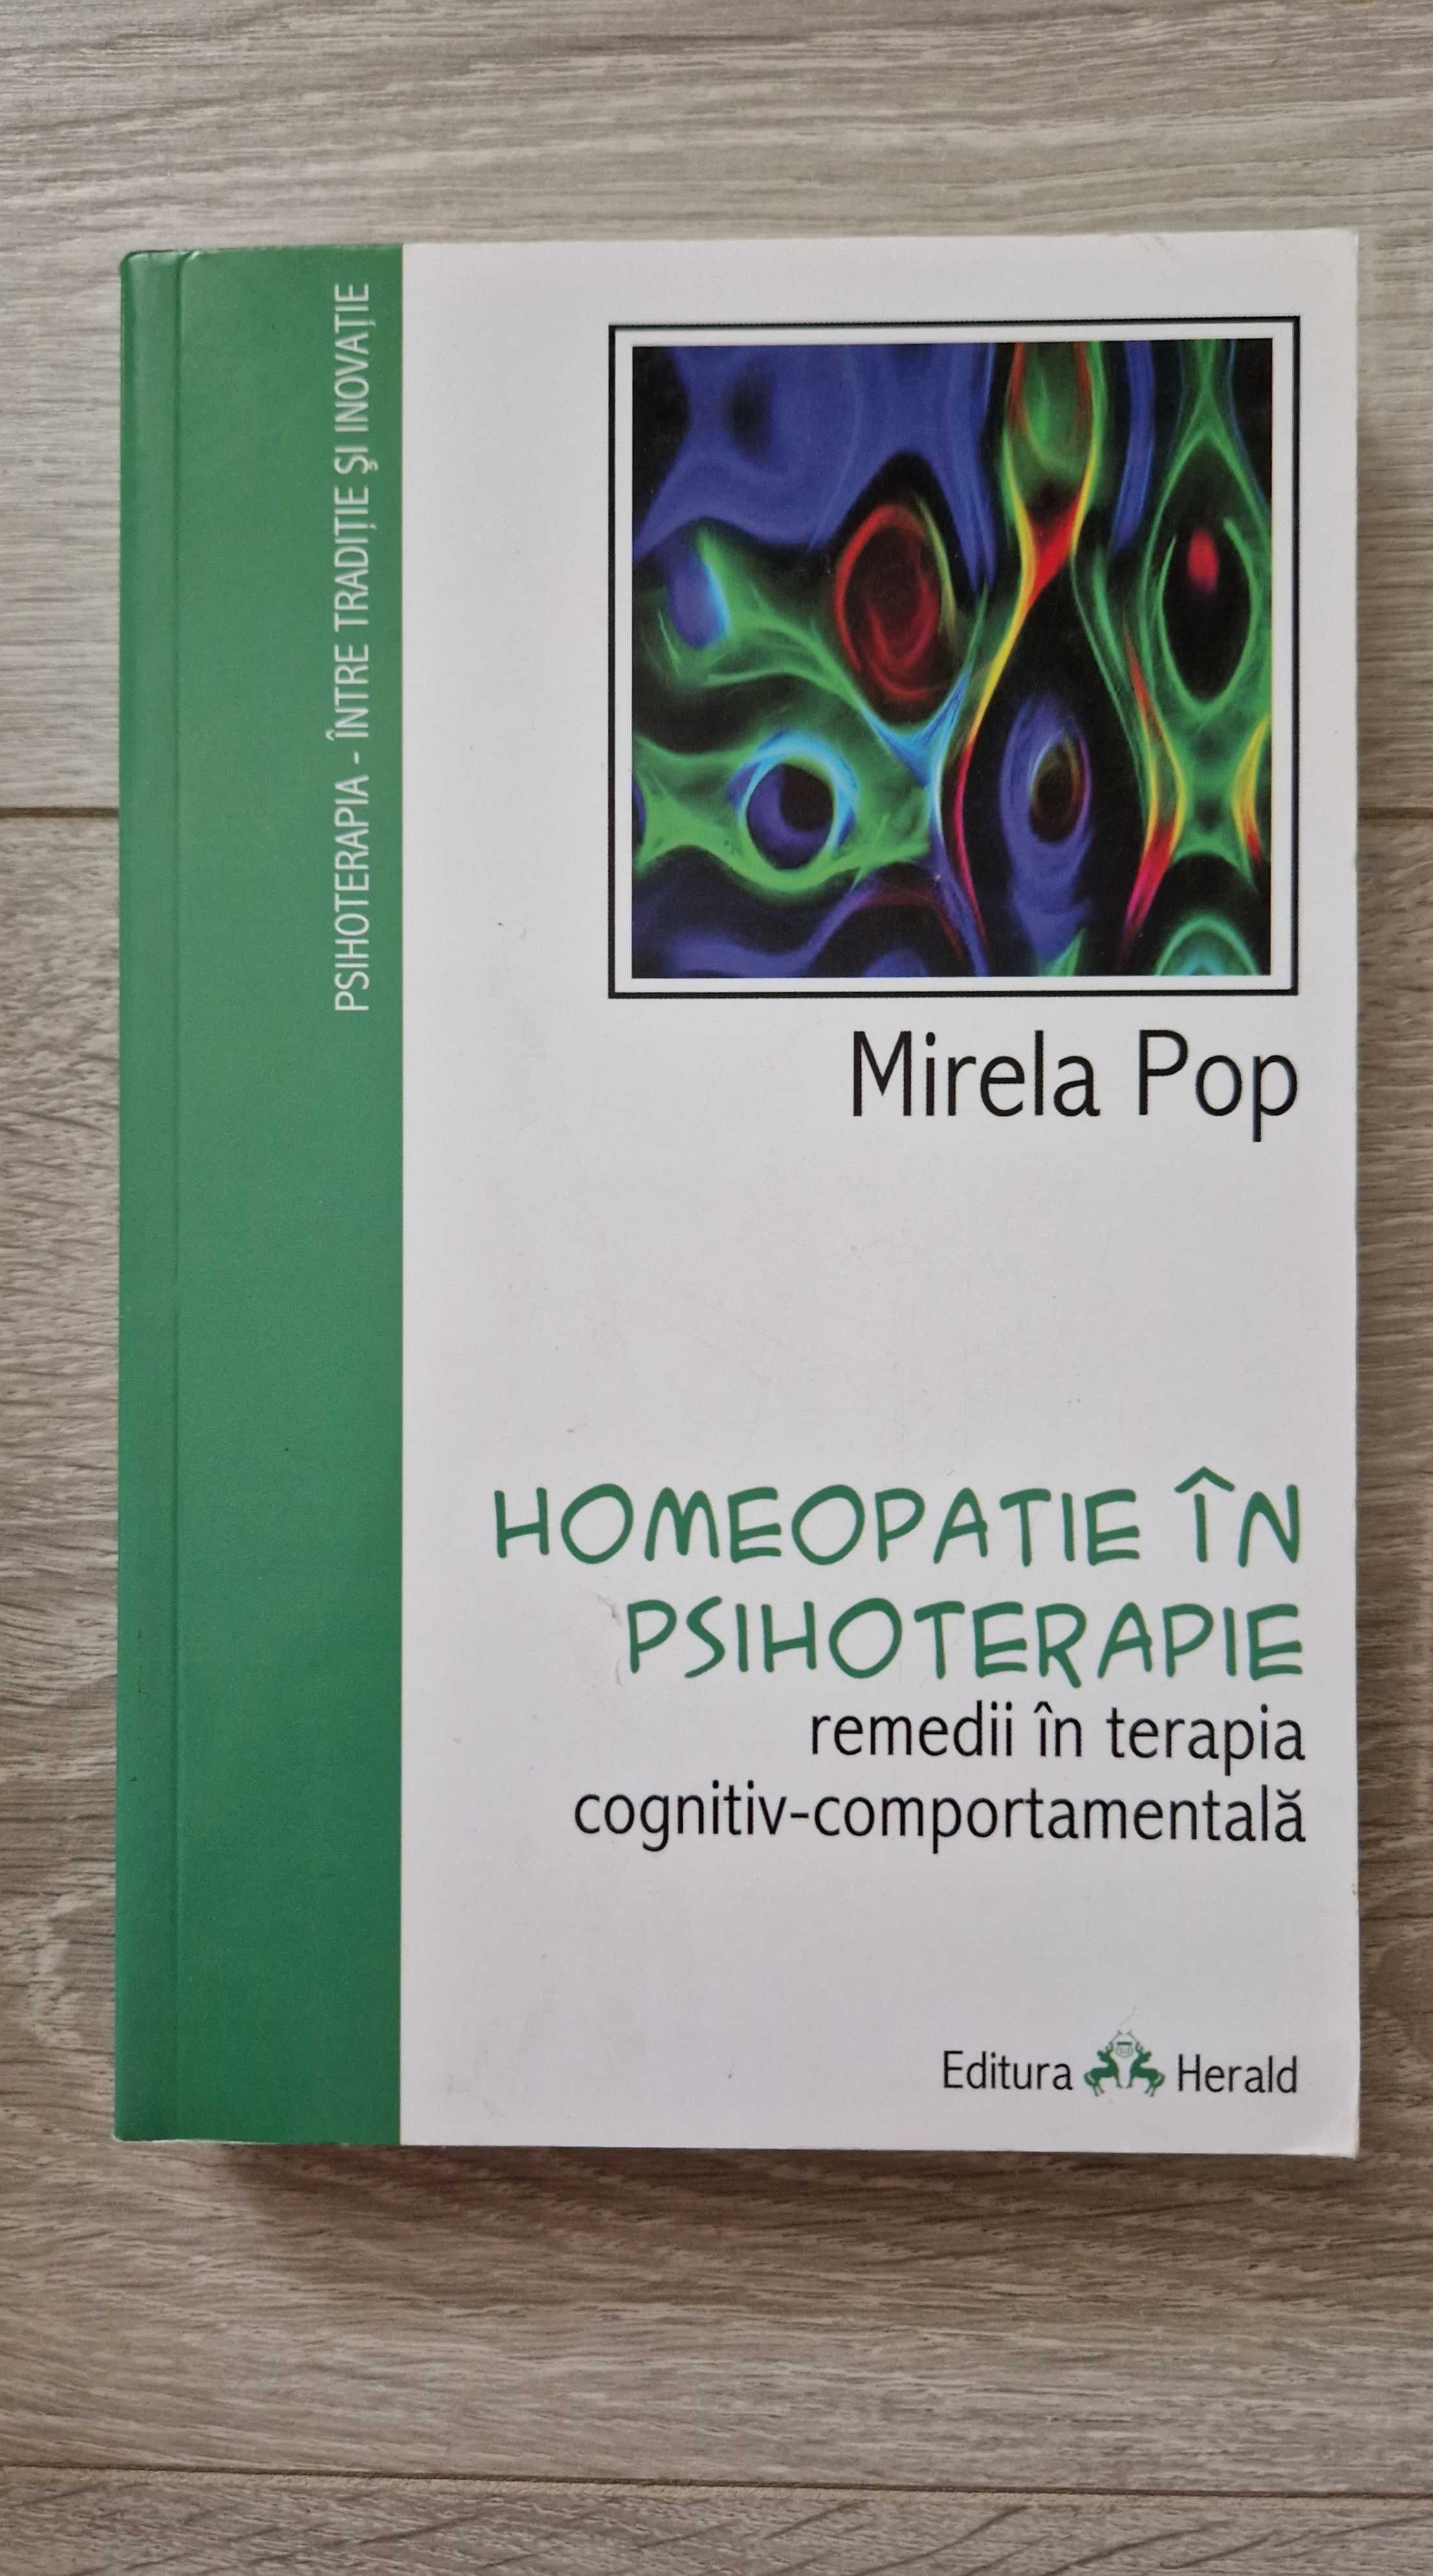 HOMEOPATIE in PSIHOTERAPIE - Mirela Pop (ed. Herald)